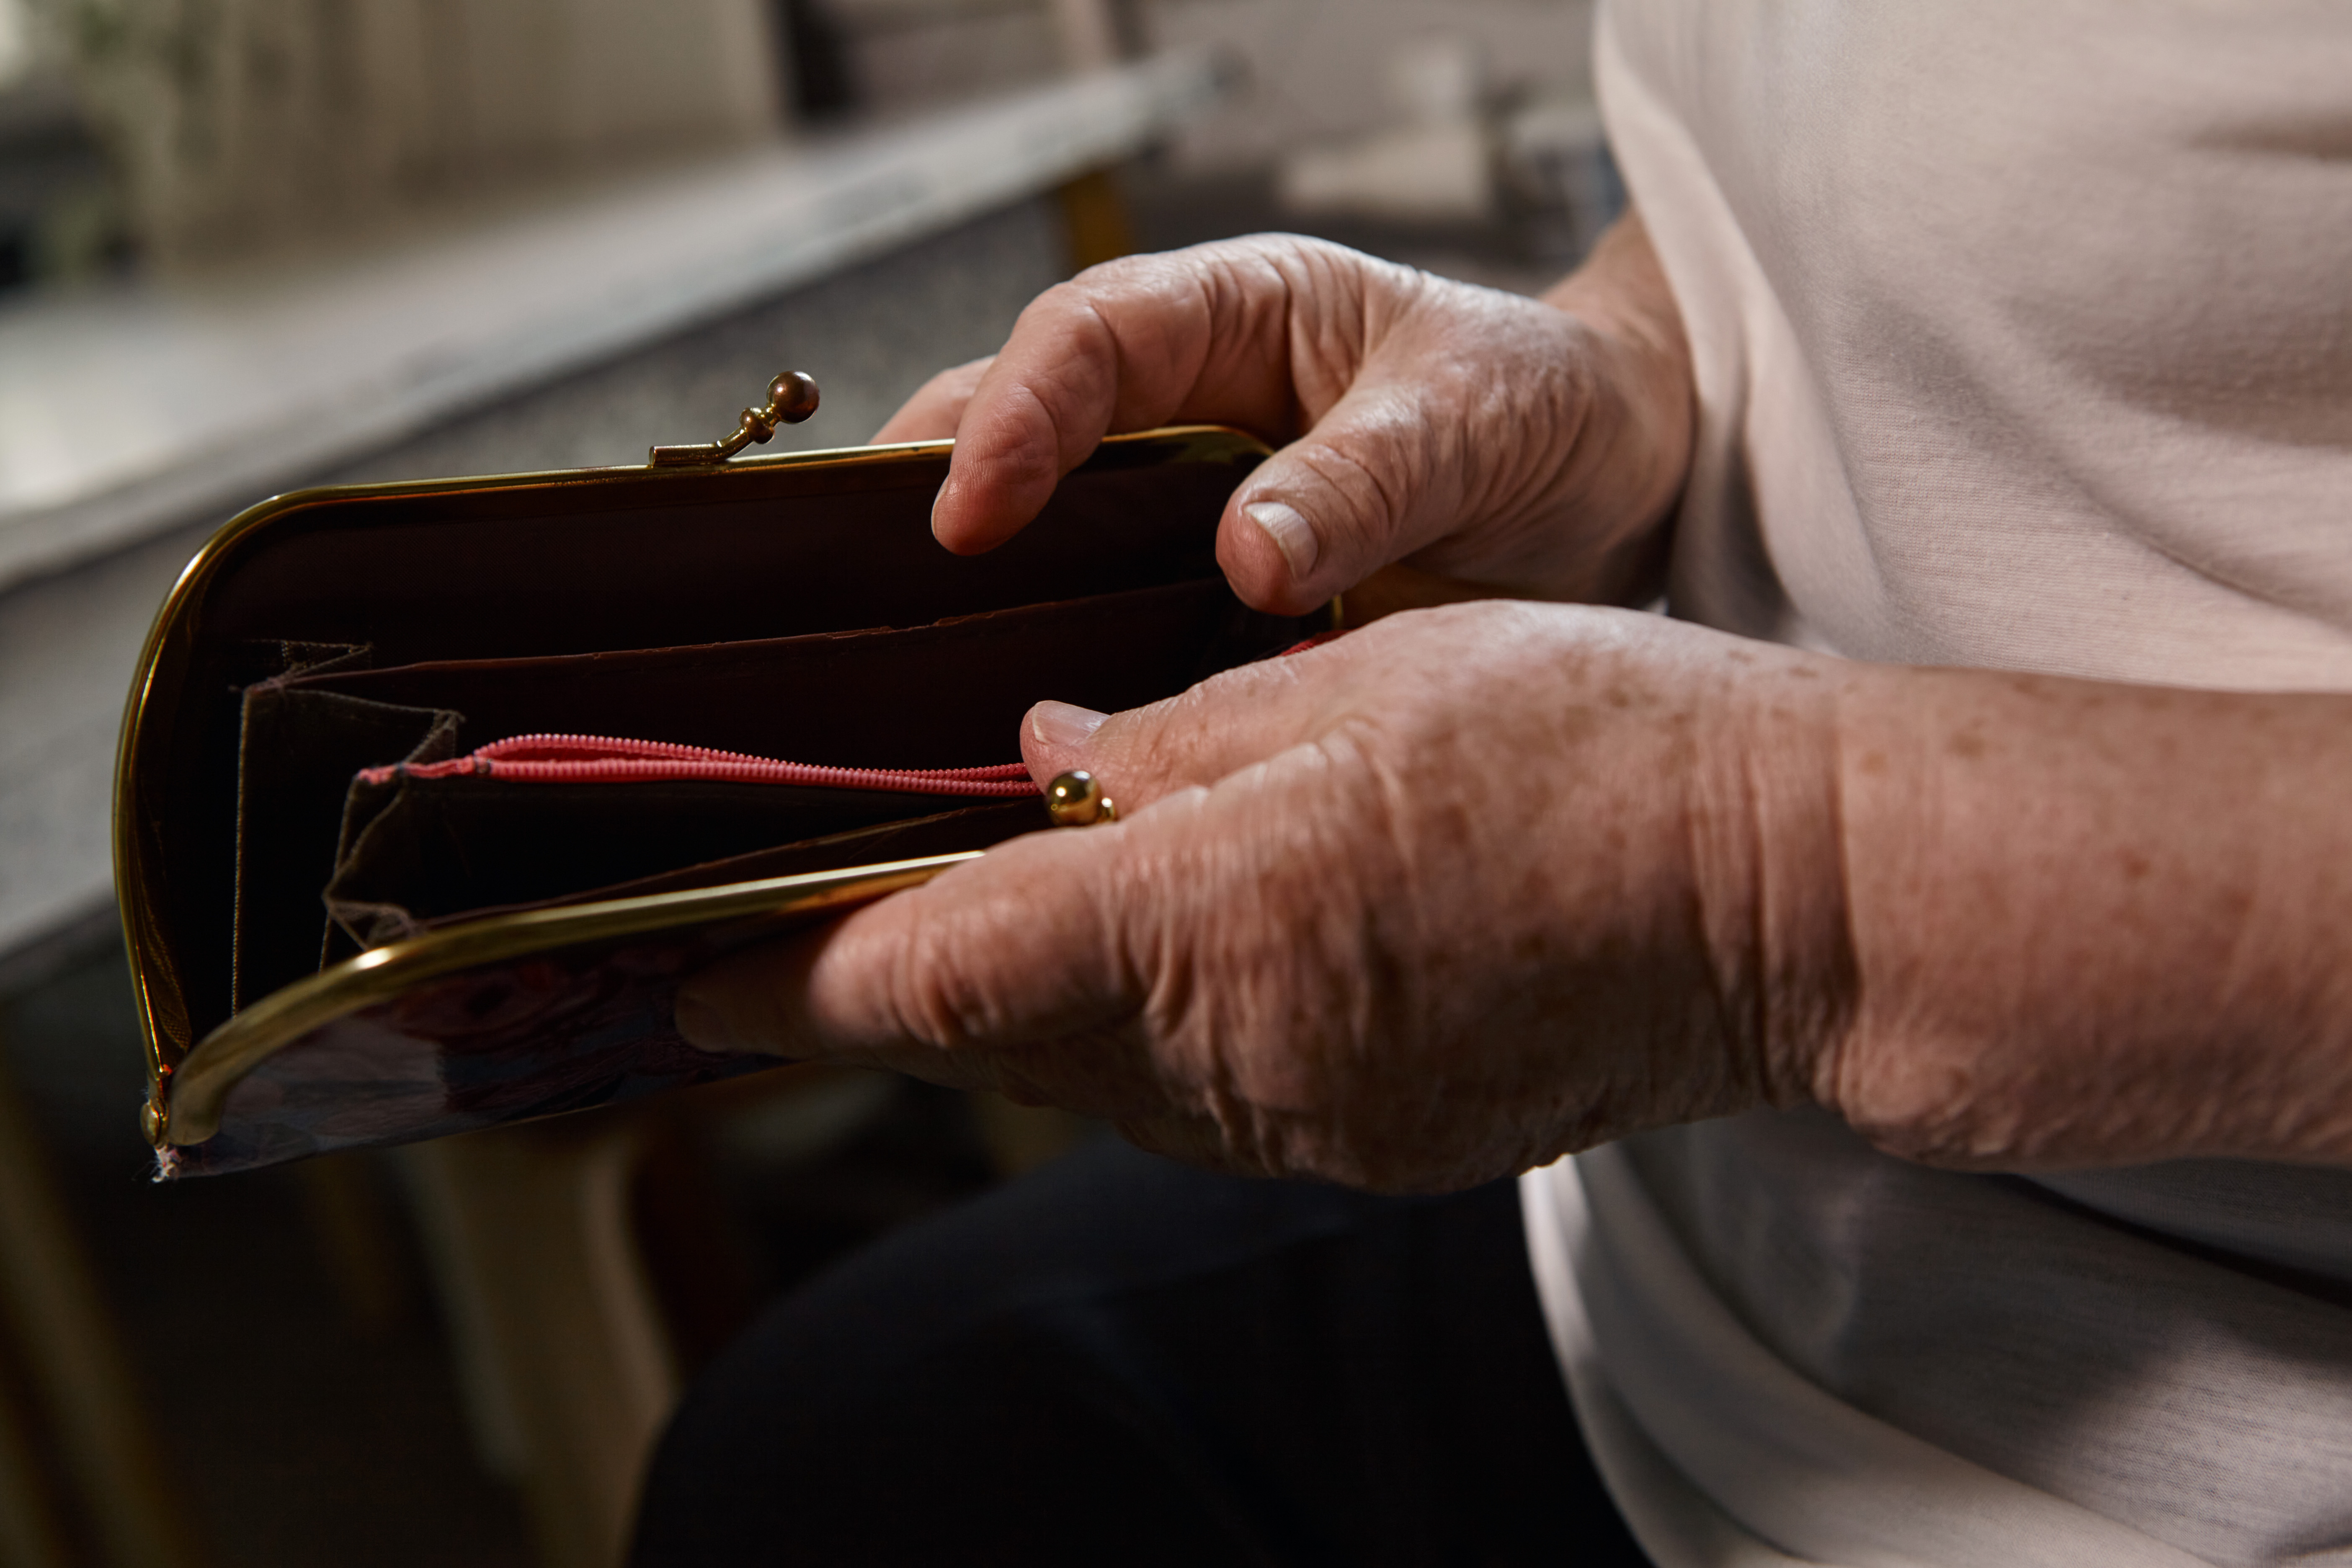 An older woman holding an empty wallet | Source: Shutterstock